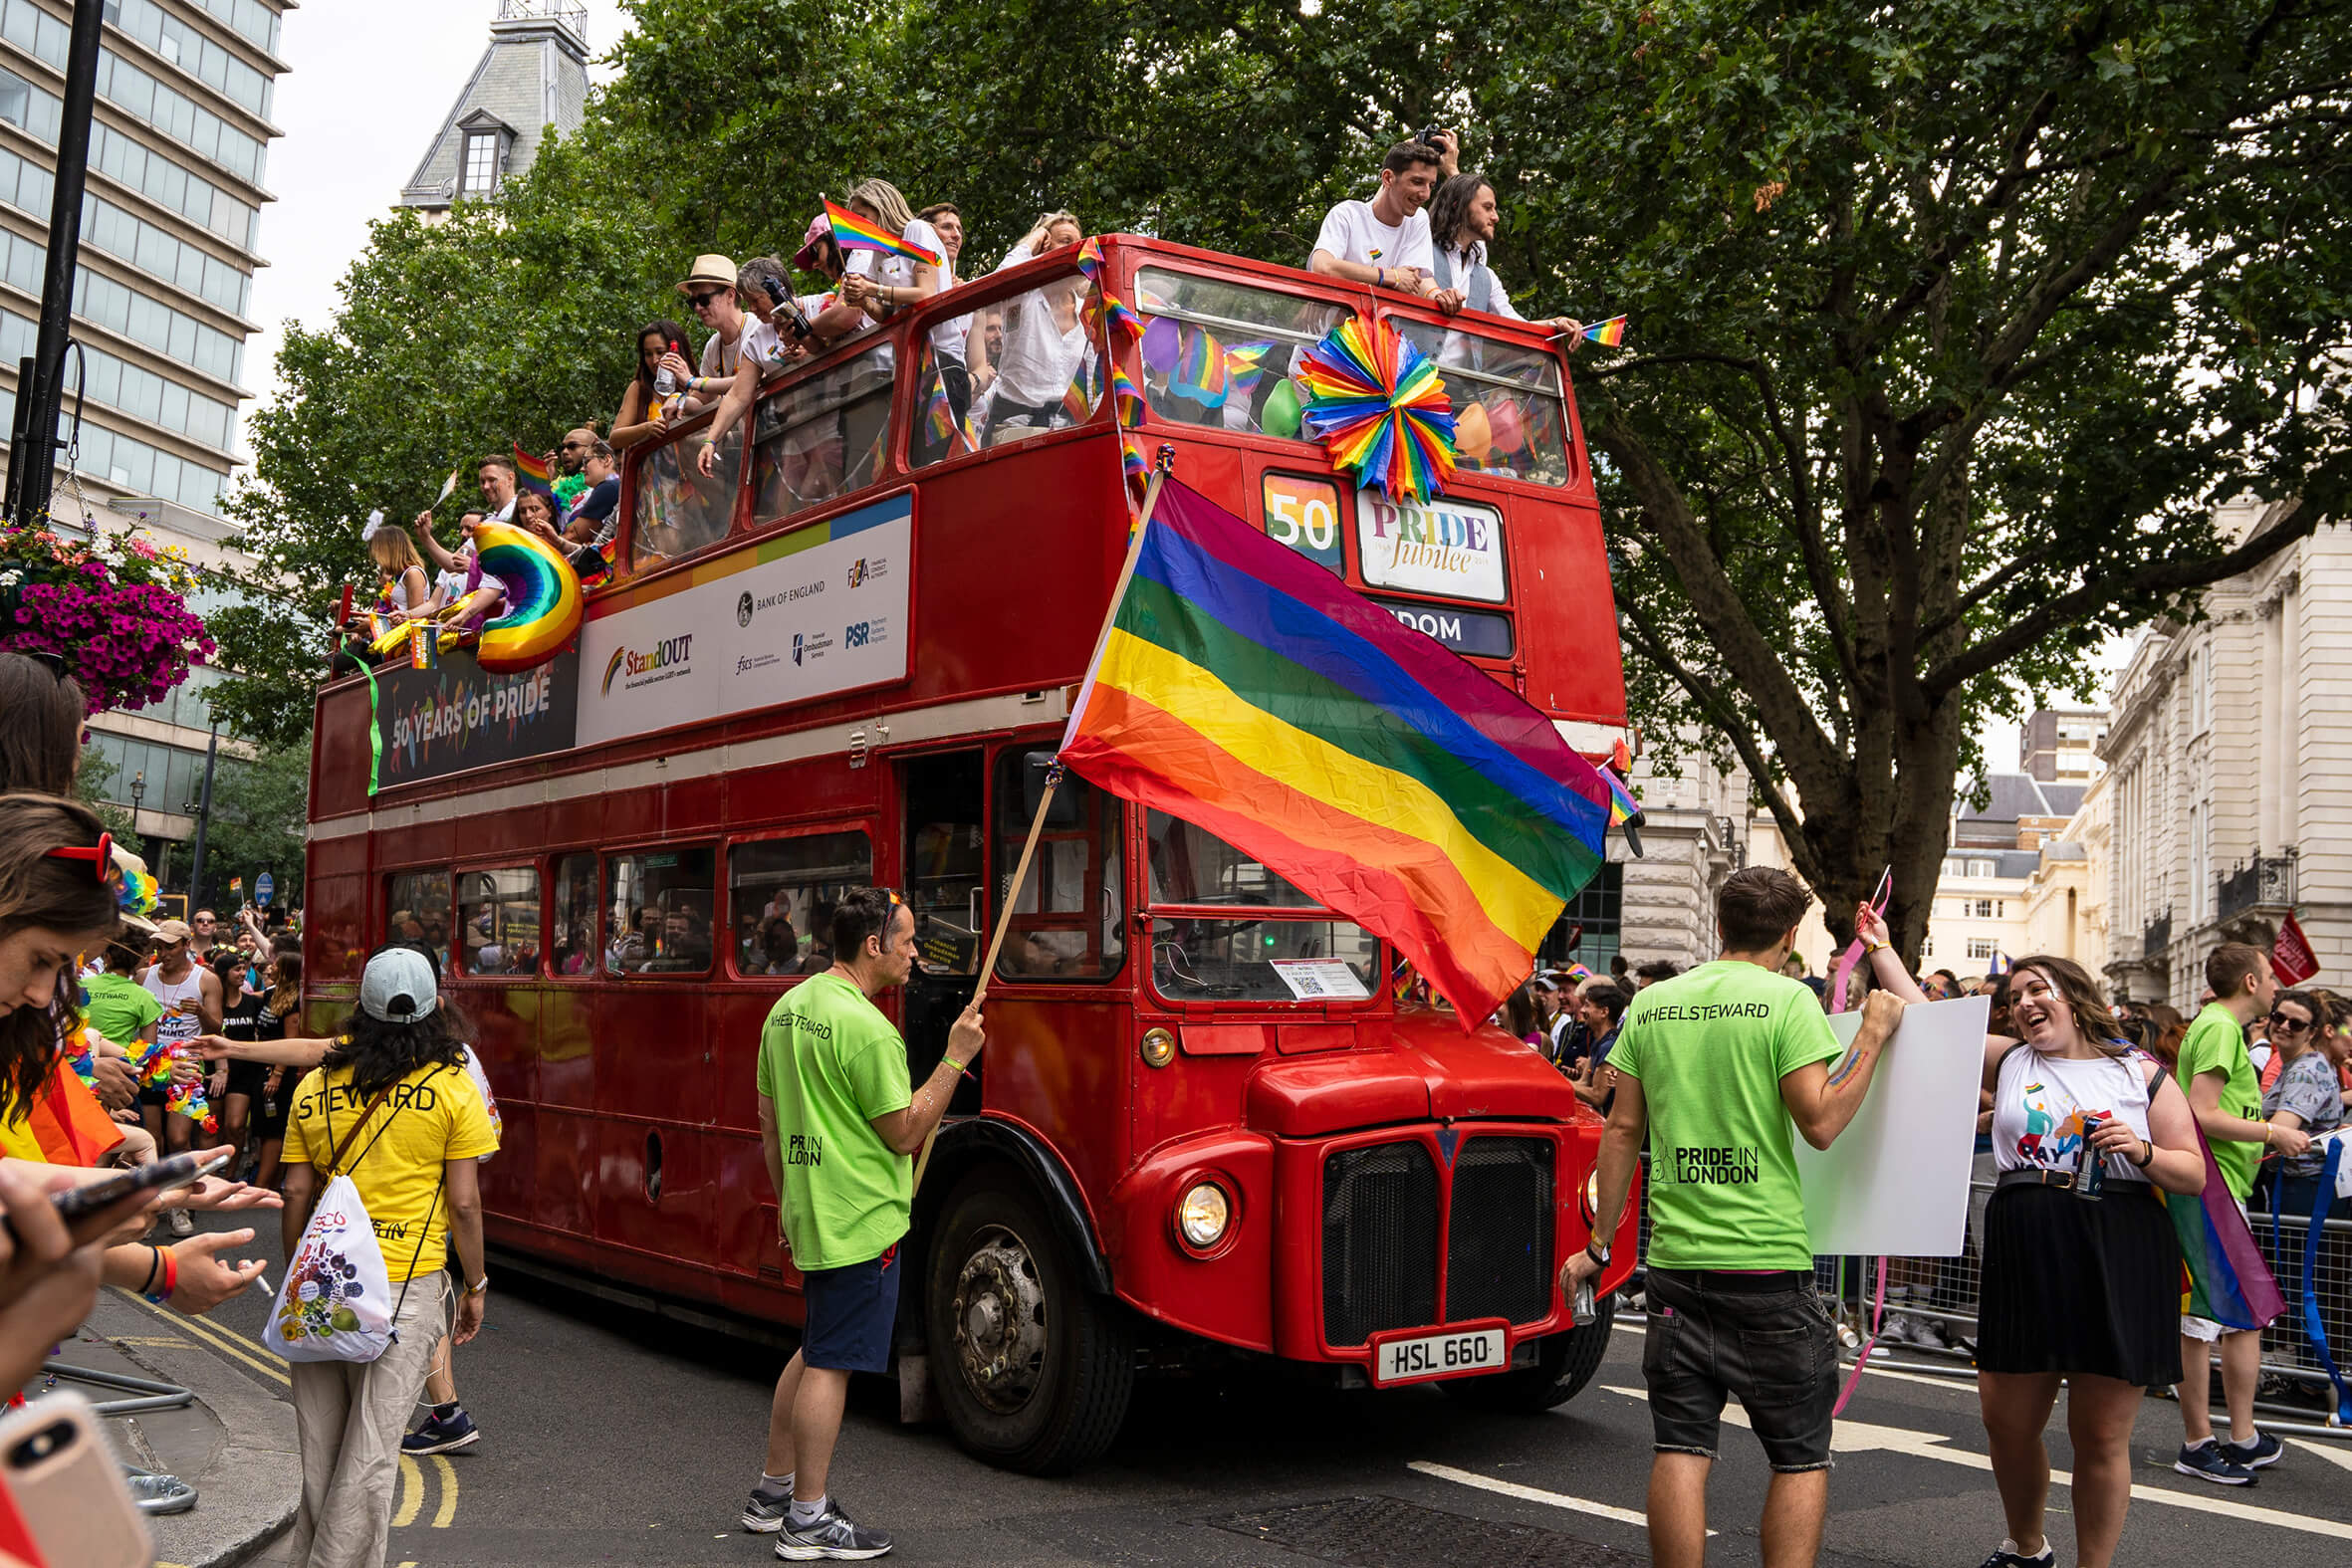 Pride event in London